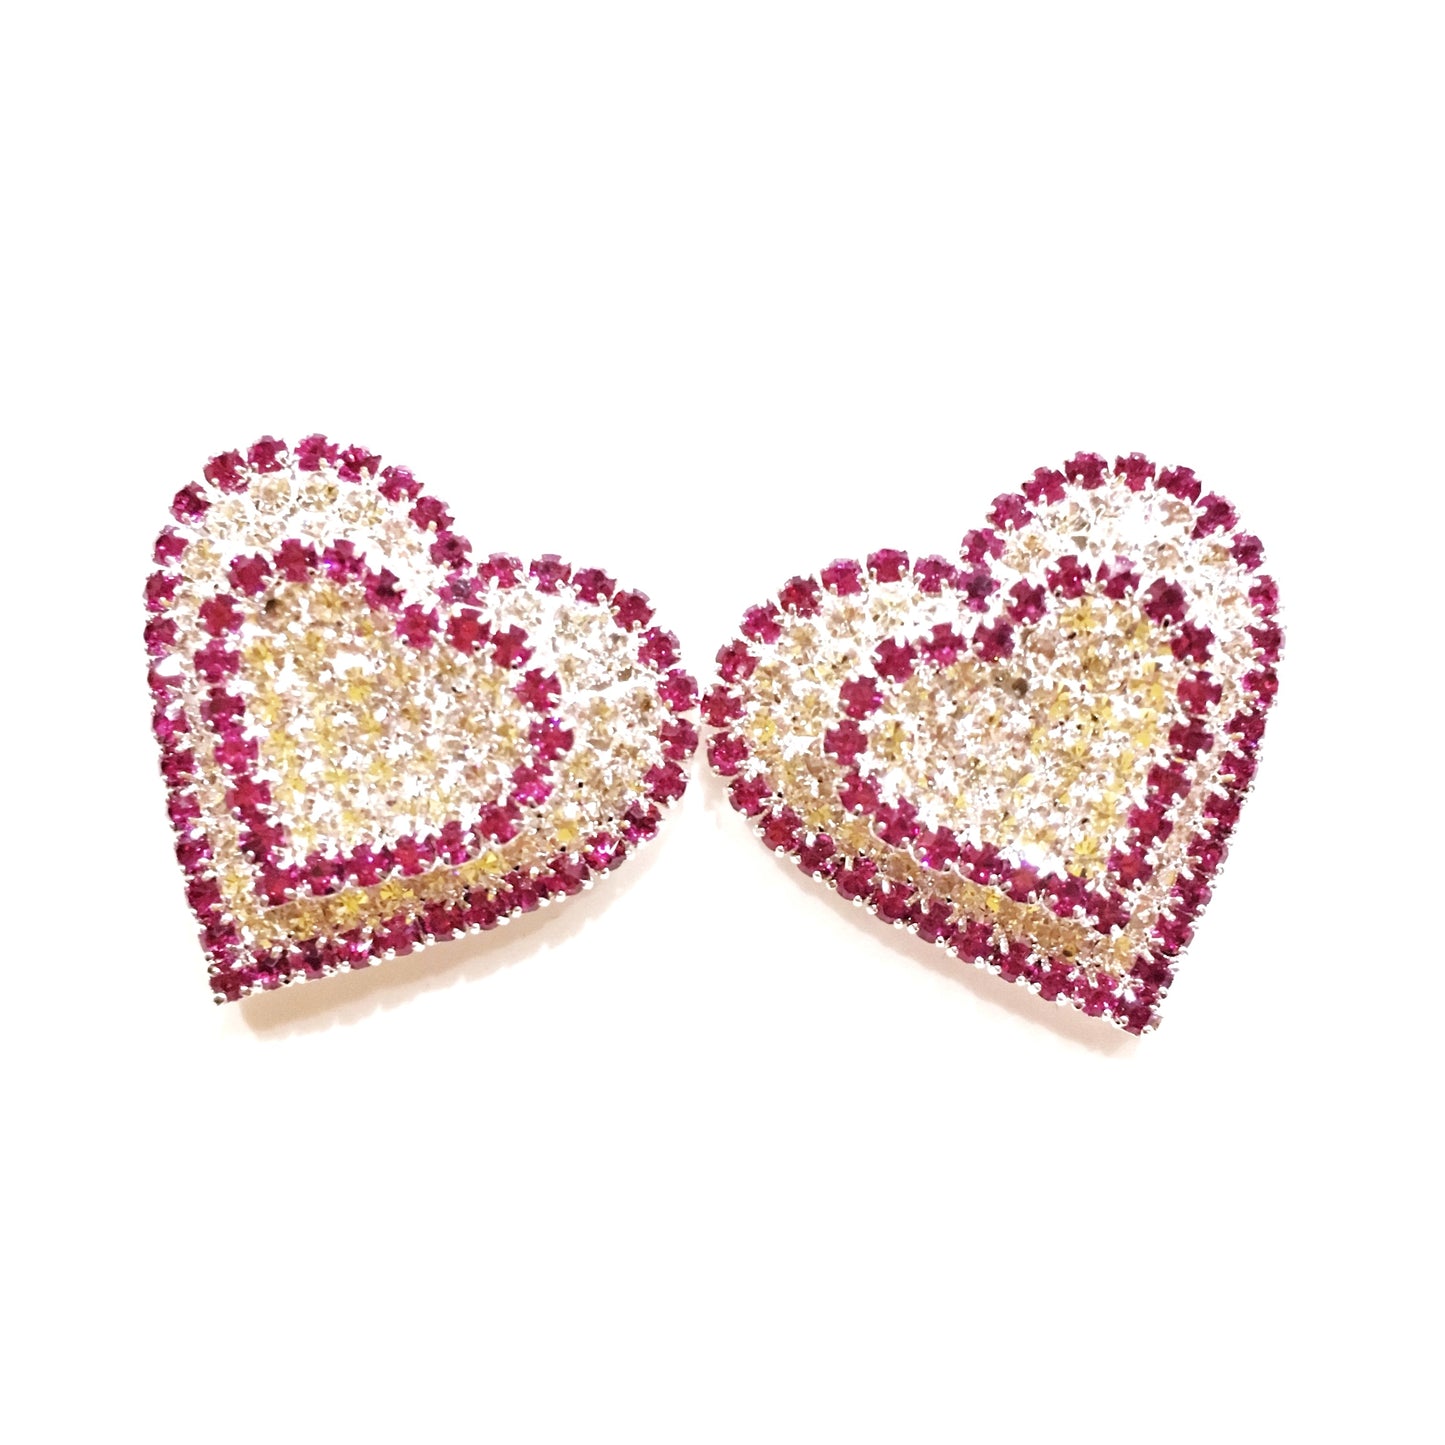 Heart Earrings #19-140510